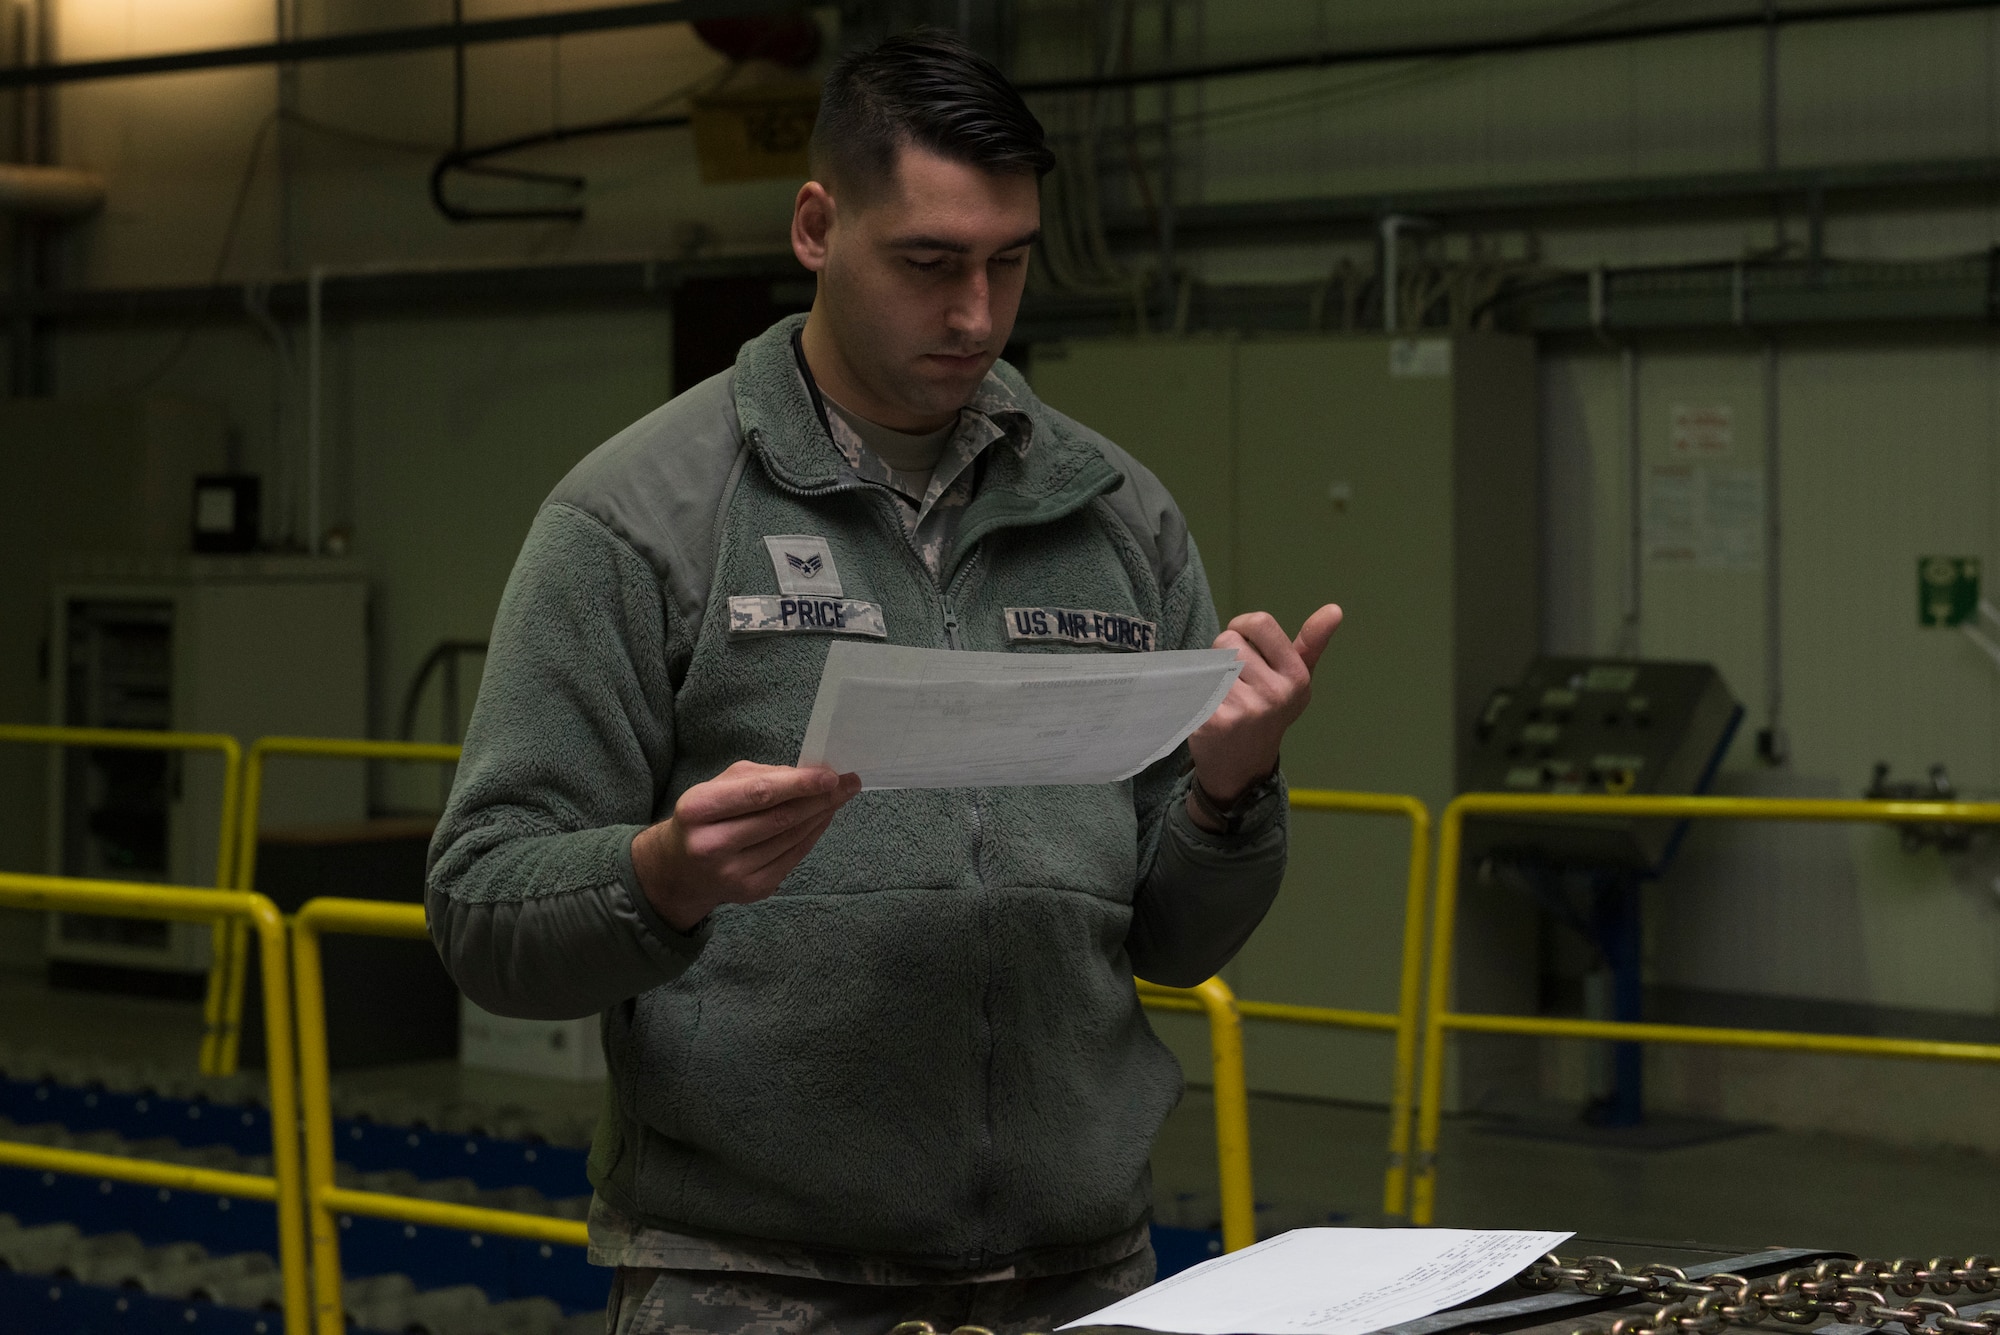 An Airman checks documents.